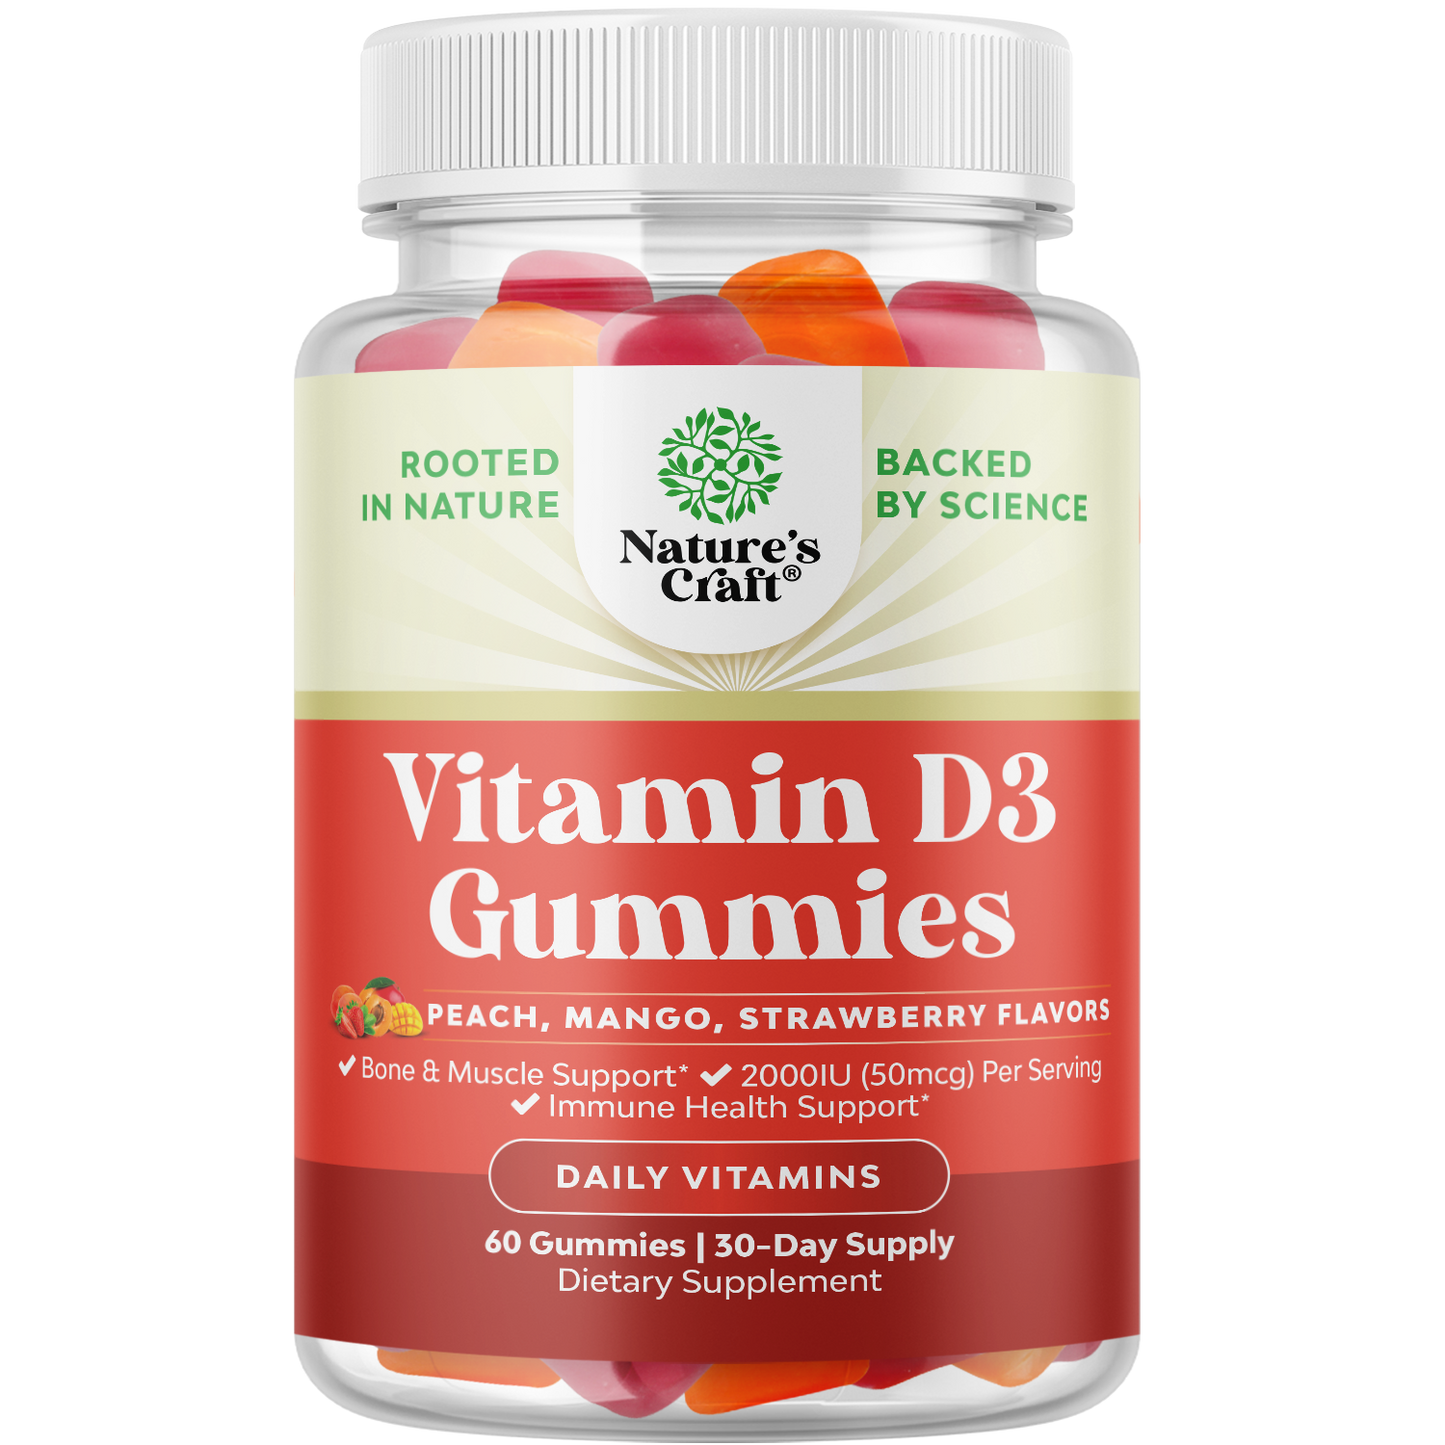 Vitamin D3 Gummies 2000IU per serving